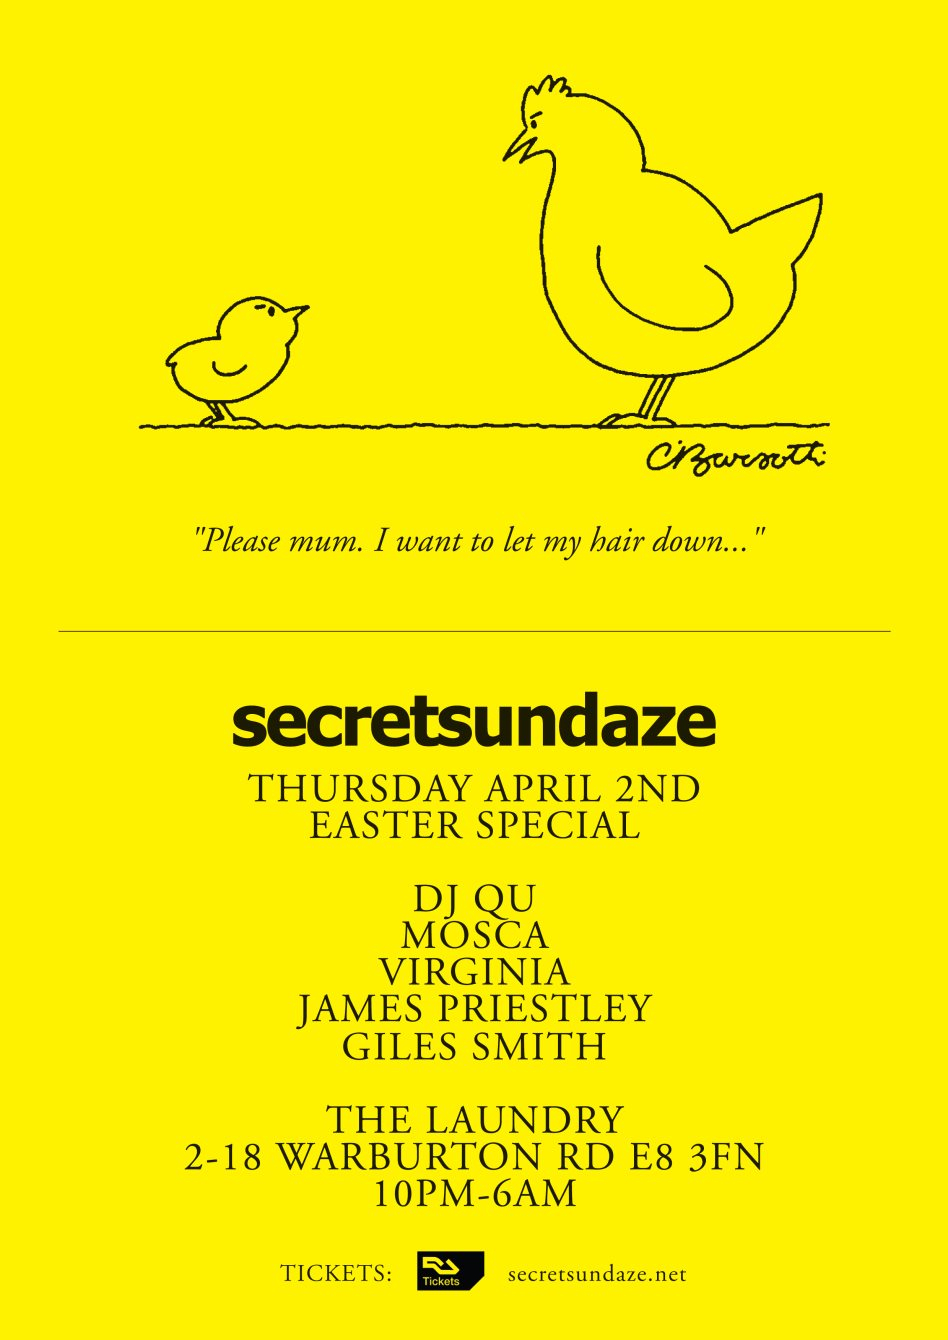 Secretsundaze Easter Special with DJ Qu, Mosca, Virginia, James Priestley & Giles Smith - Flyer back